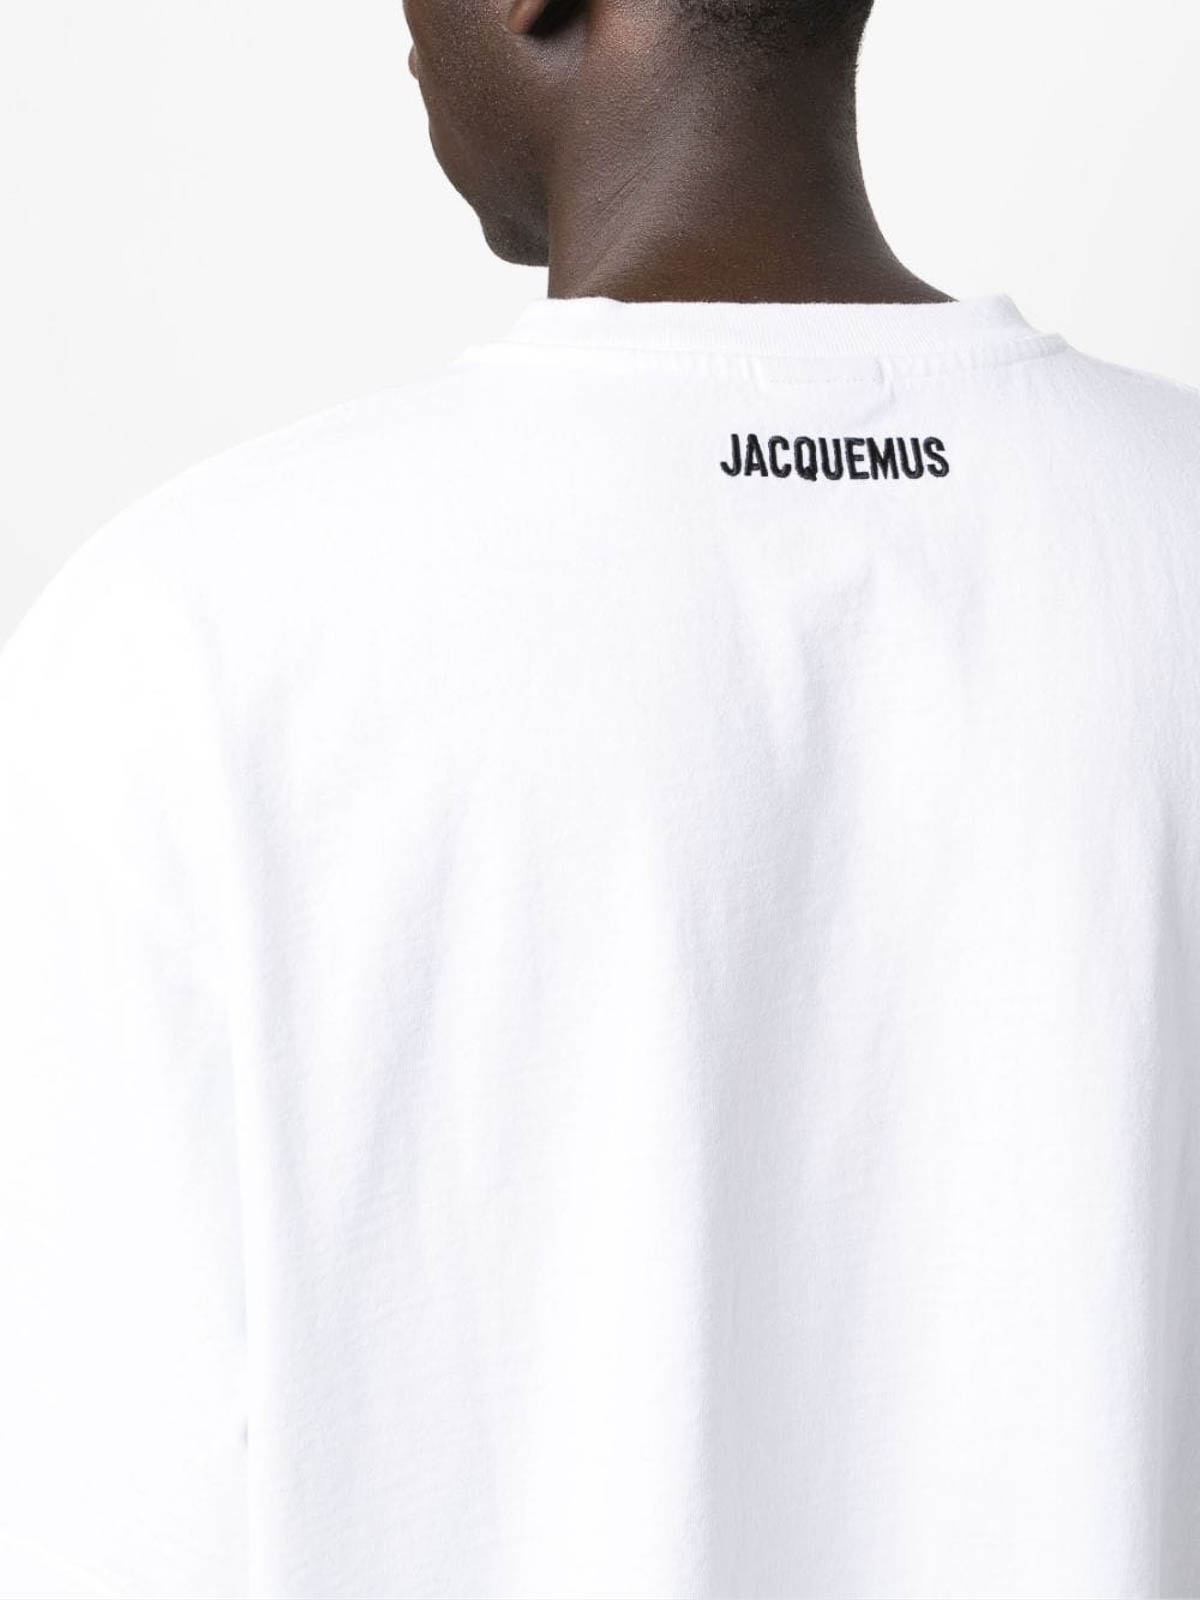 Le T-shirt Jacquemus by JACQUEMUS